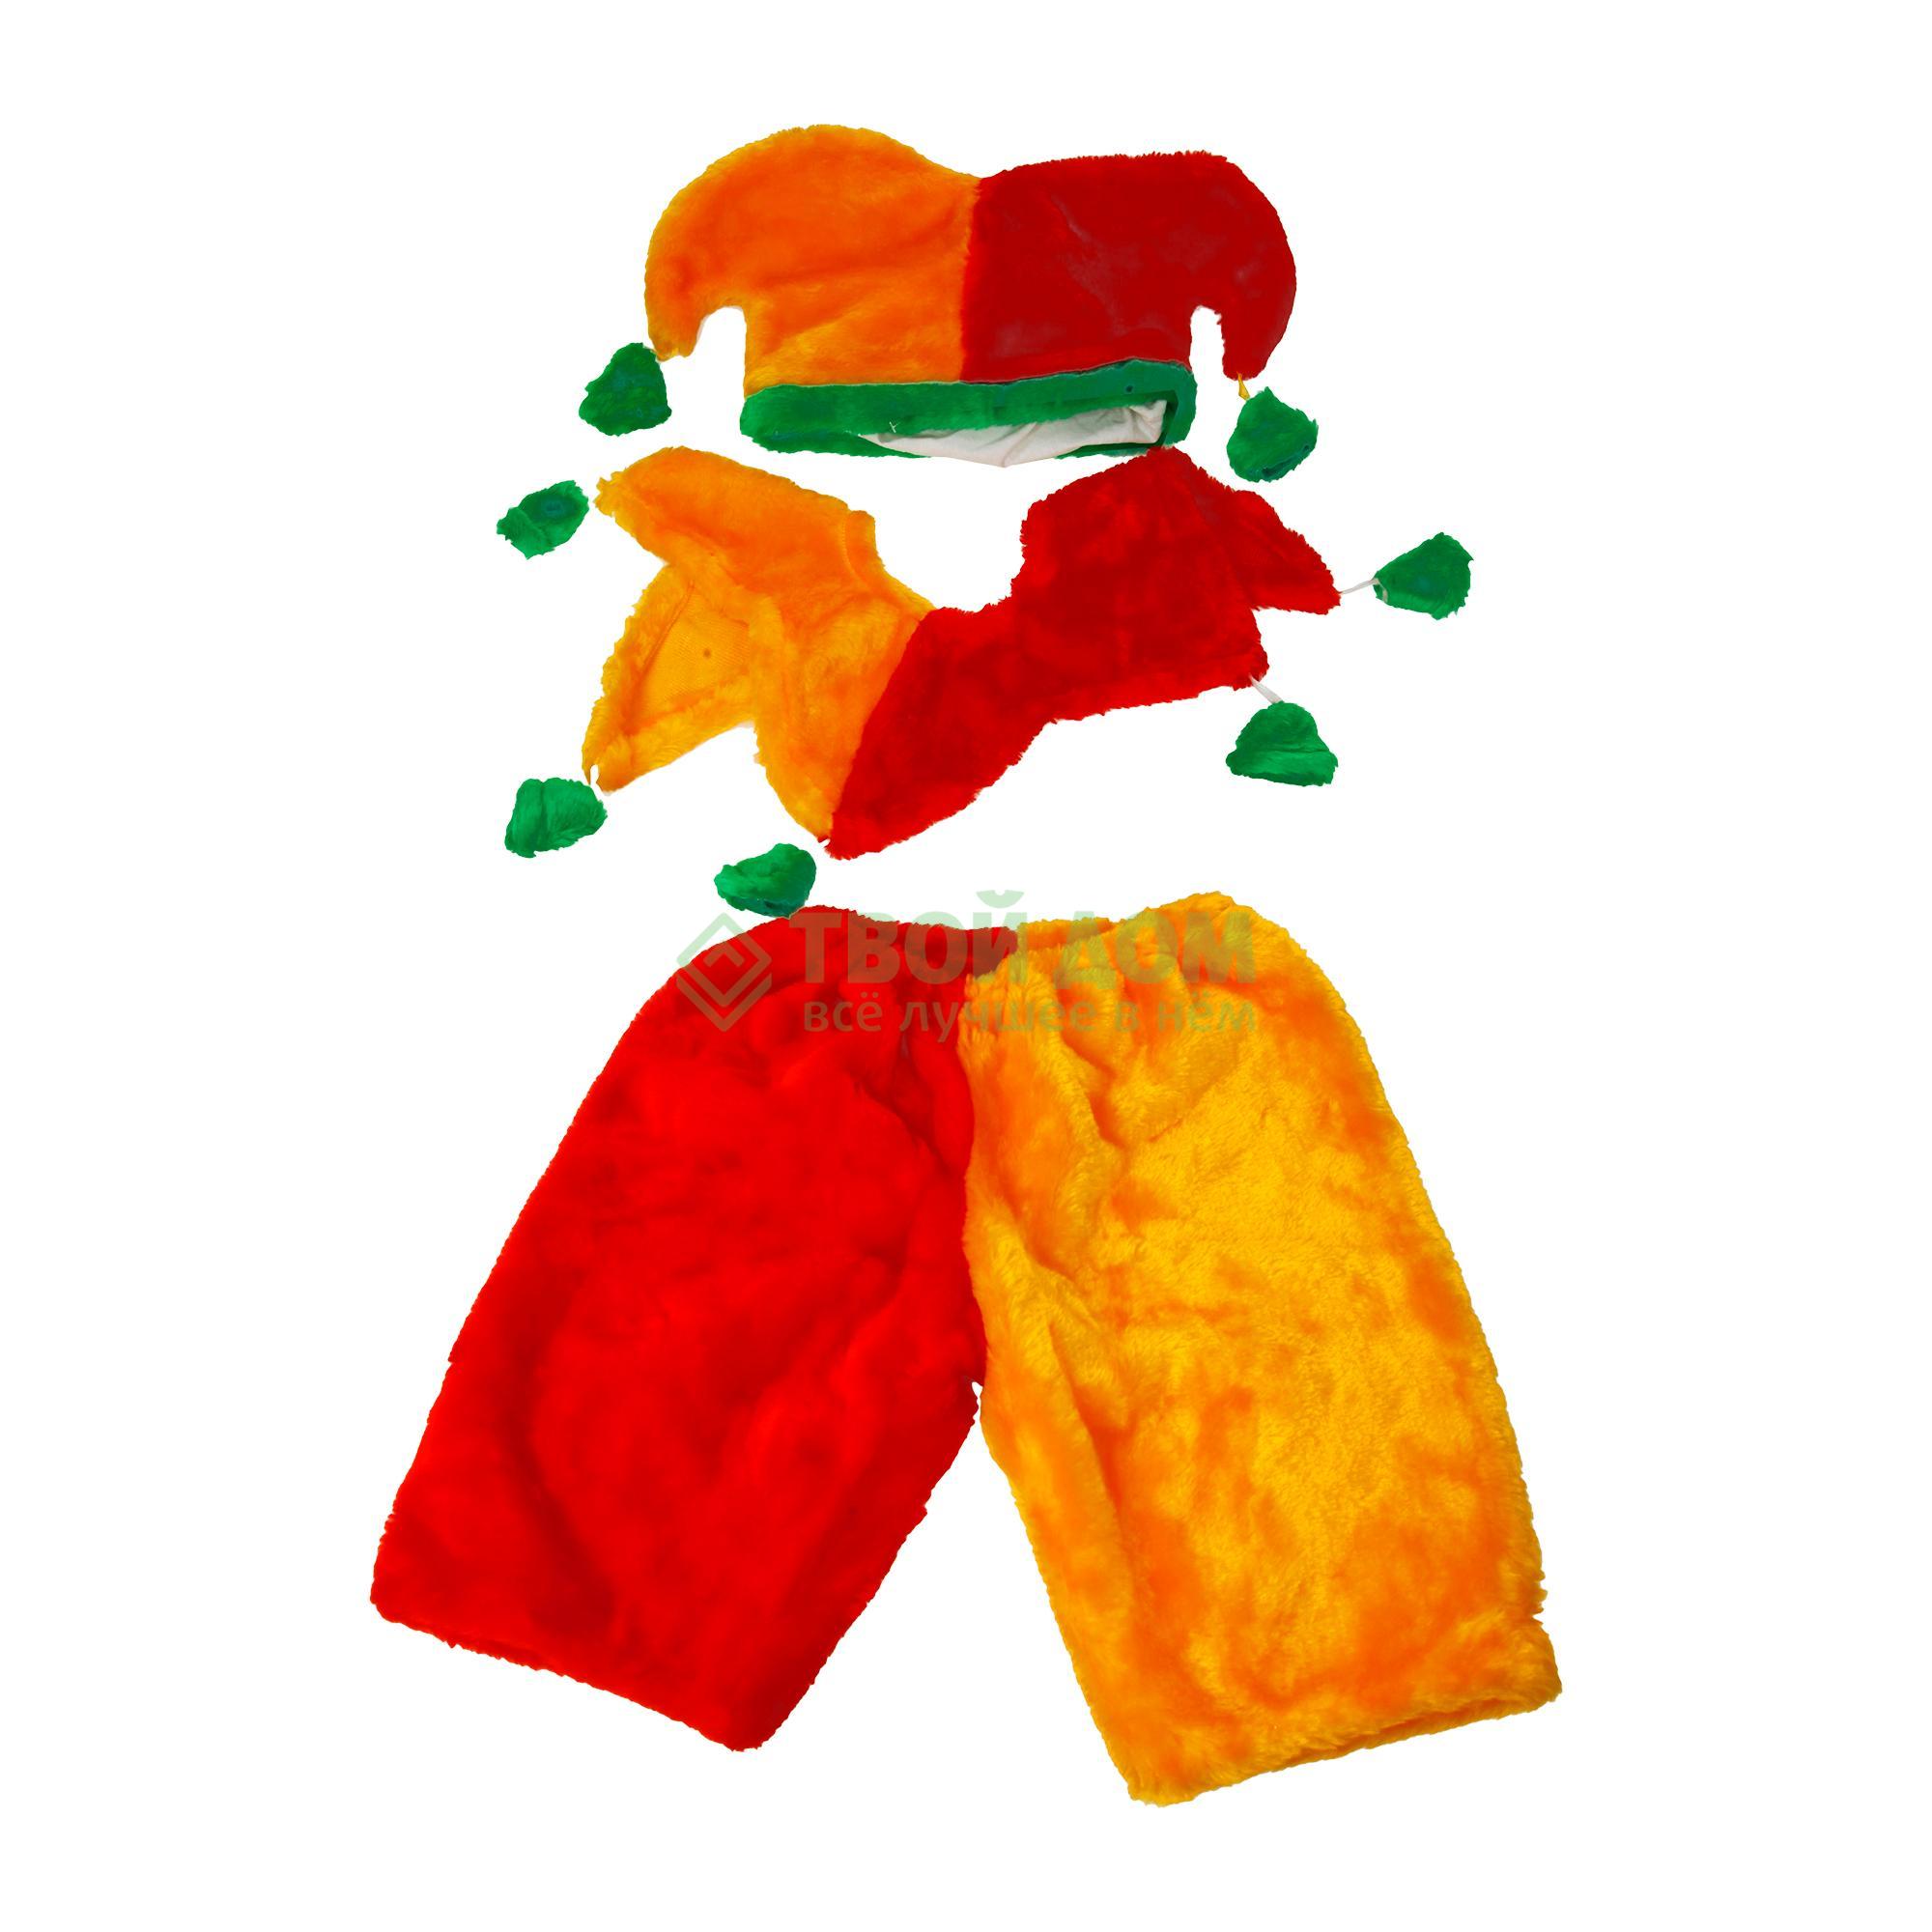 Артэ-Грим Карнавальный костюм петрушка артэ грим карнавальный костюм поросёнок